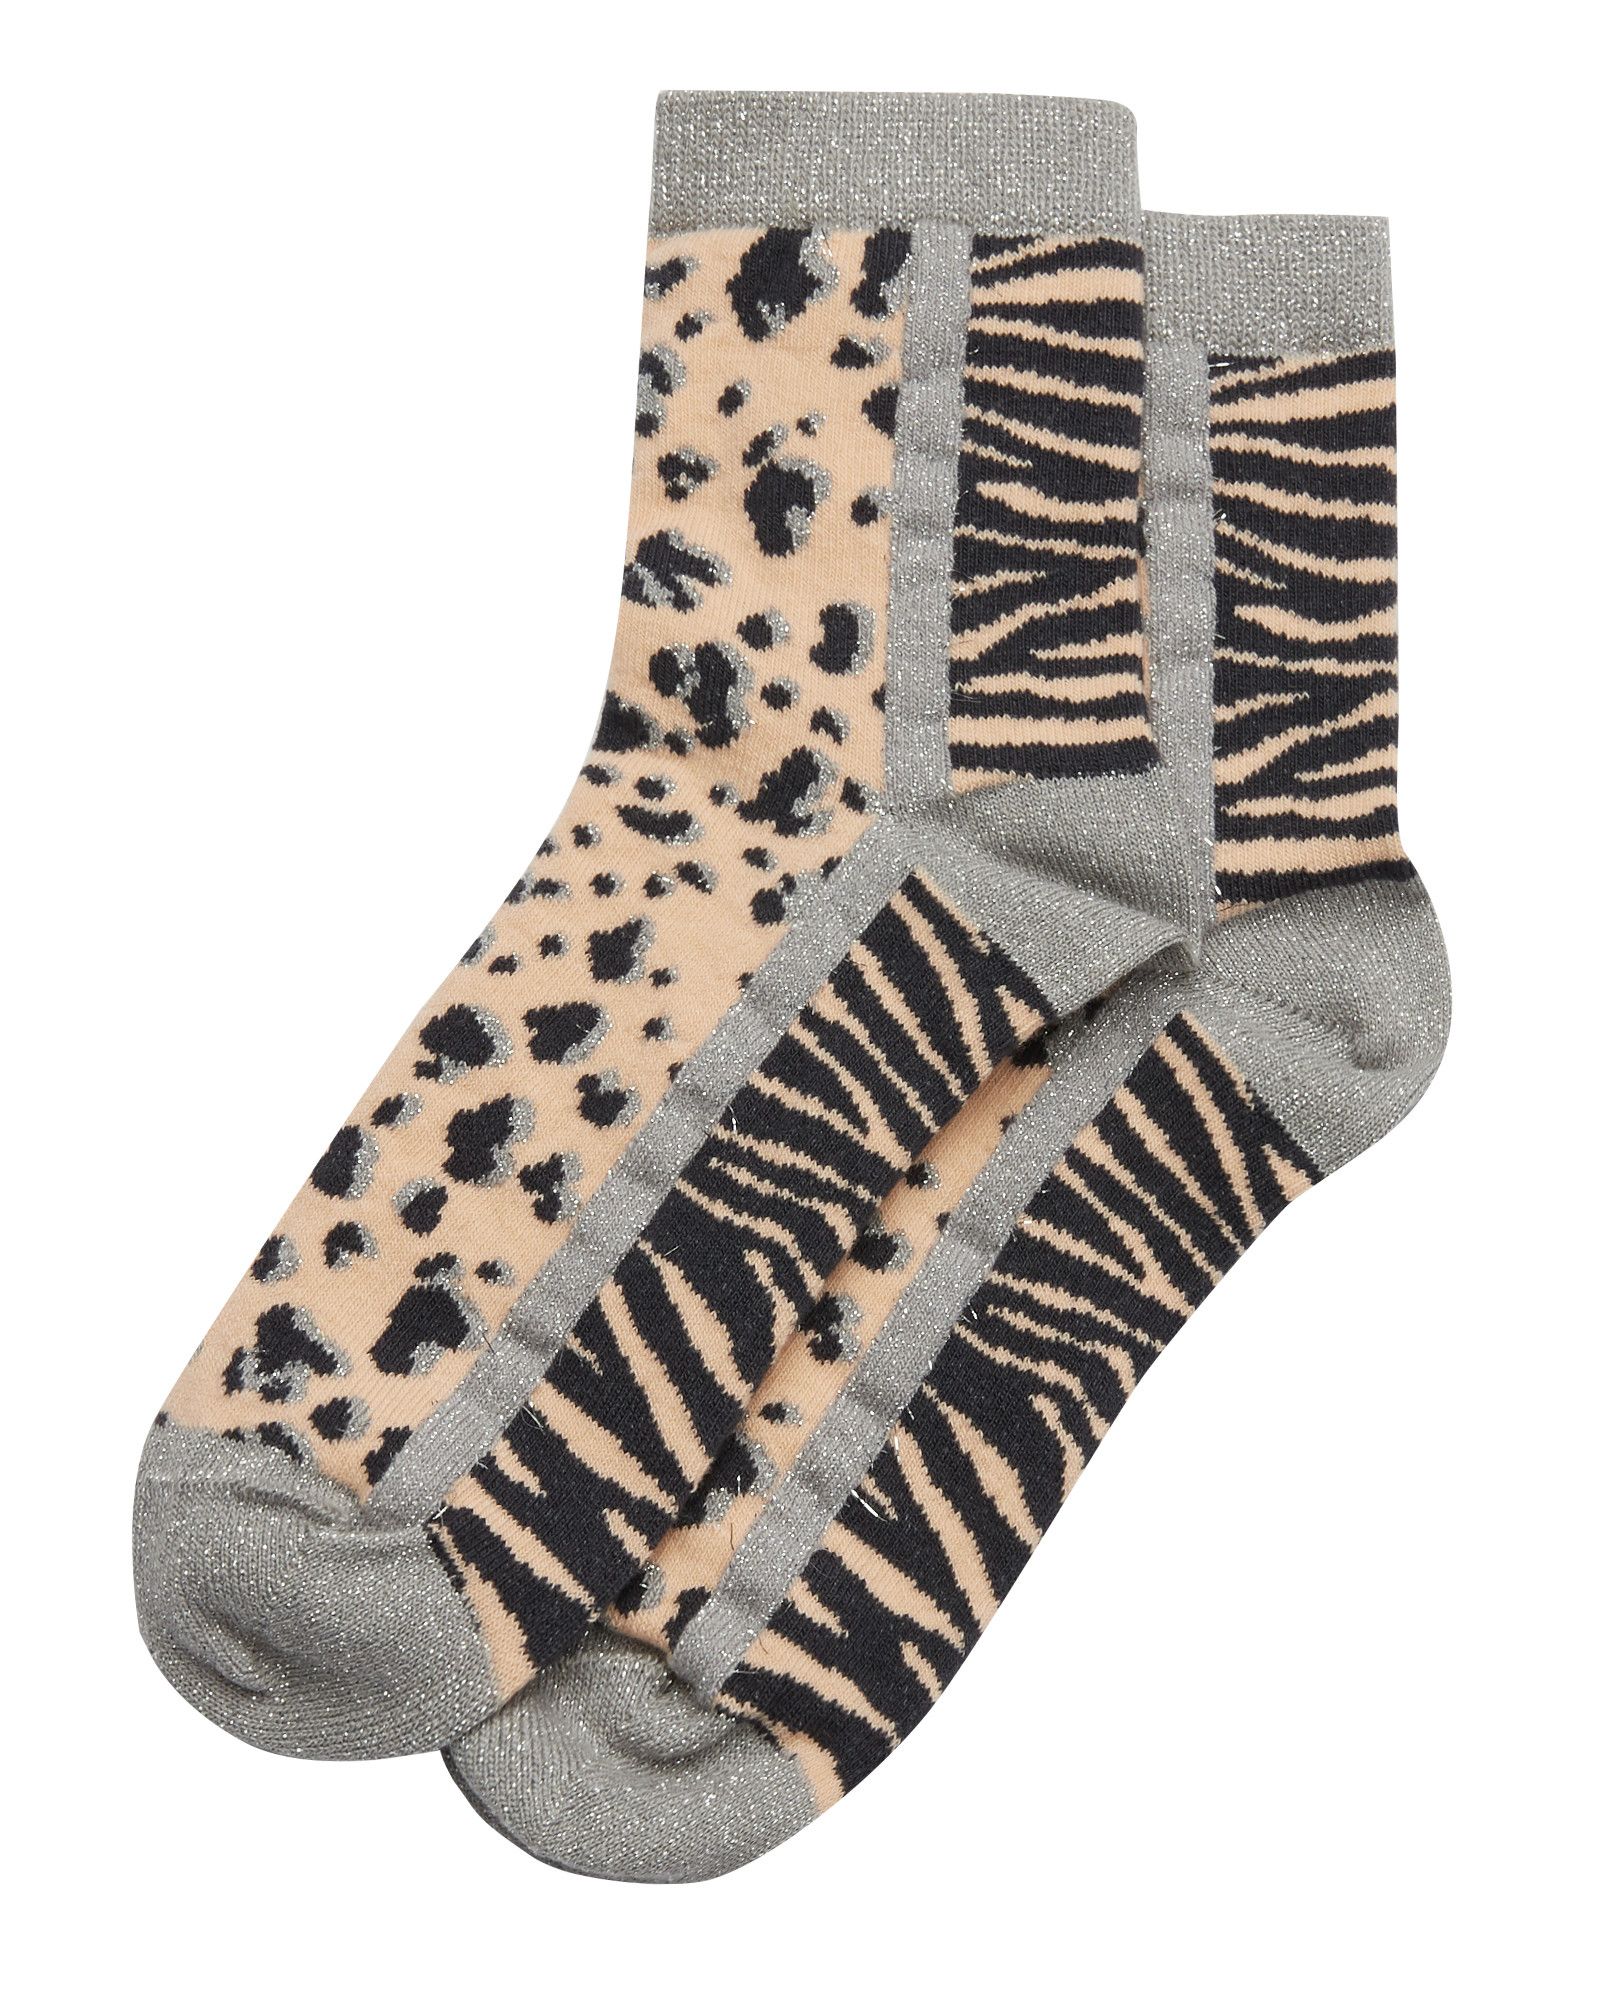 Animal Print Pink Ankle Socks | Oliver Bonas